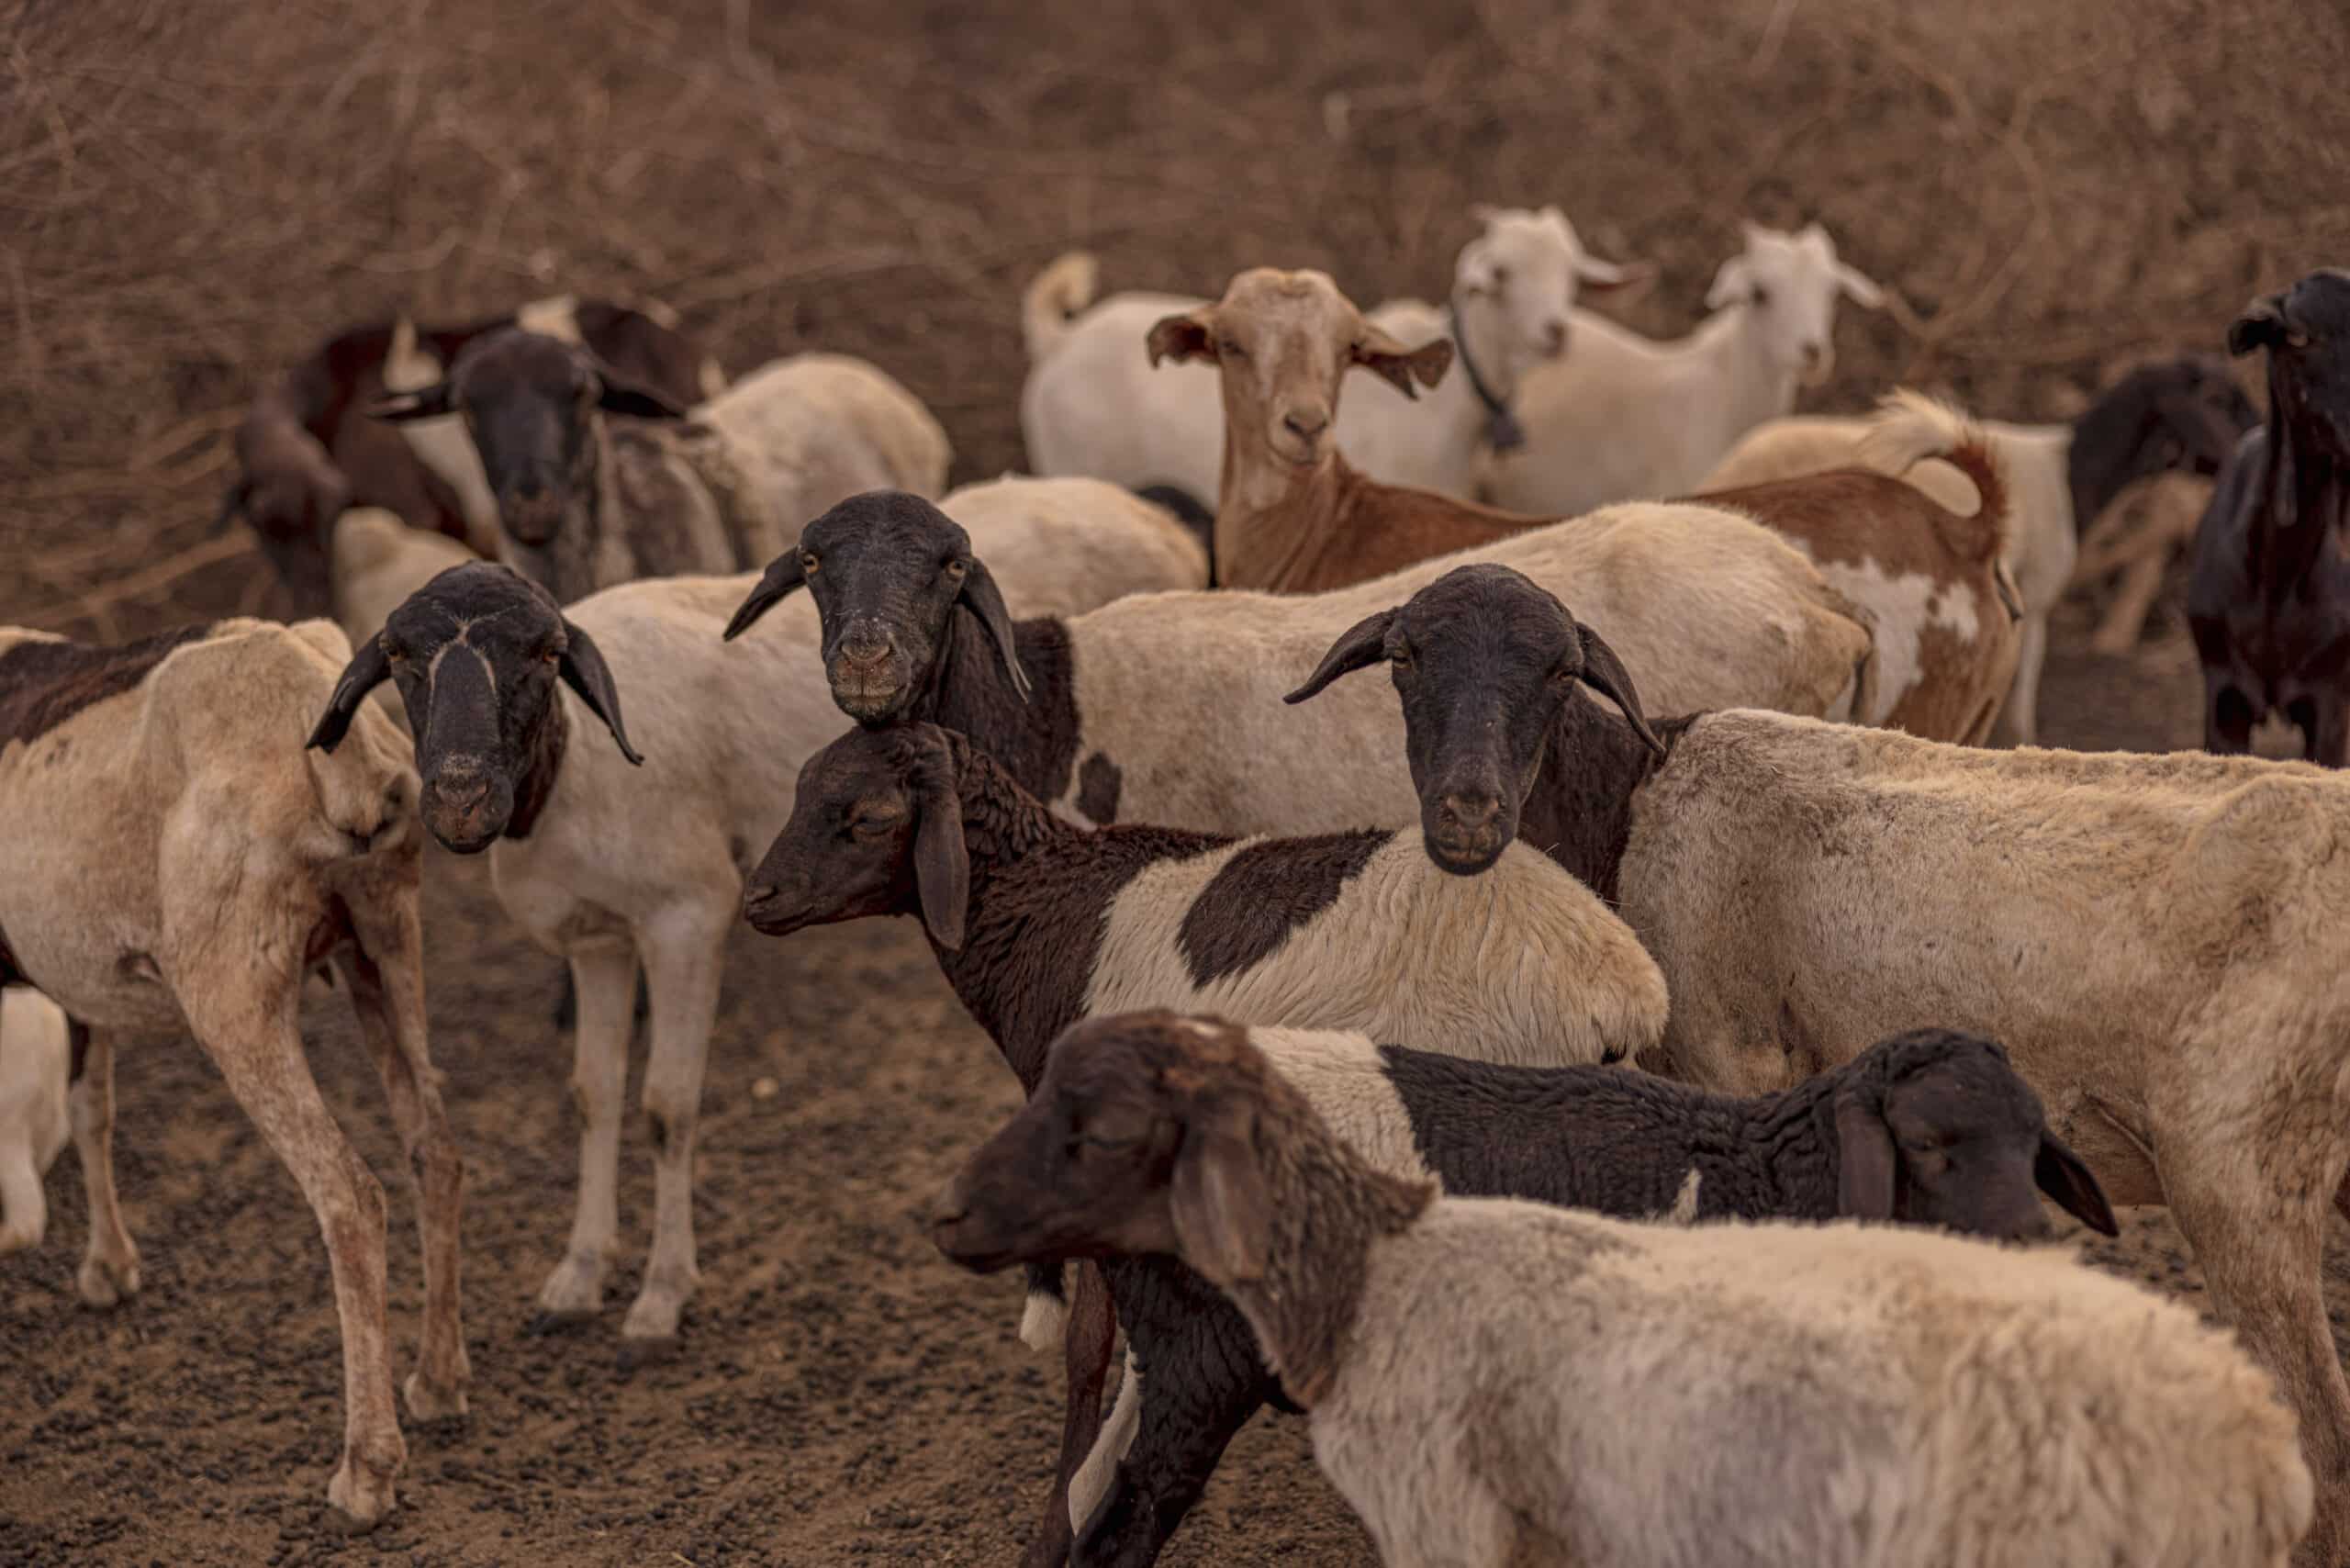 Eine Herde Ziegen mit unterschiedlichen Fellfarben, vorherrschend in den Schattierungen von Weiß, Braun und Schwarz, steht dicht beieinander auf einem trockenen, staubigen Gelände. © Fotografie Tomas Rodriguez